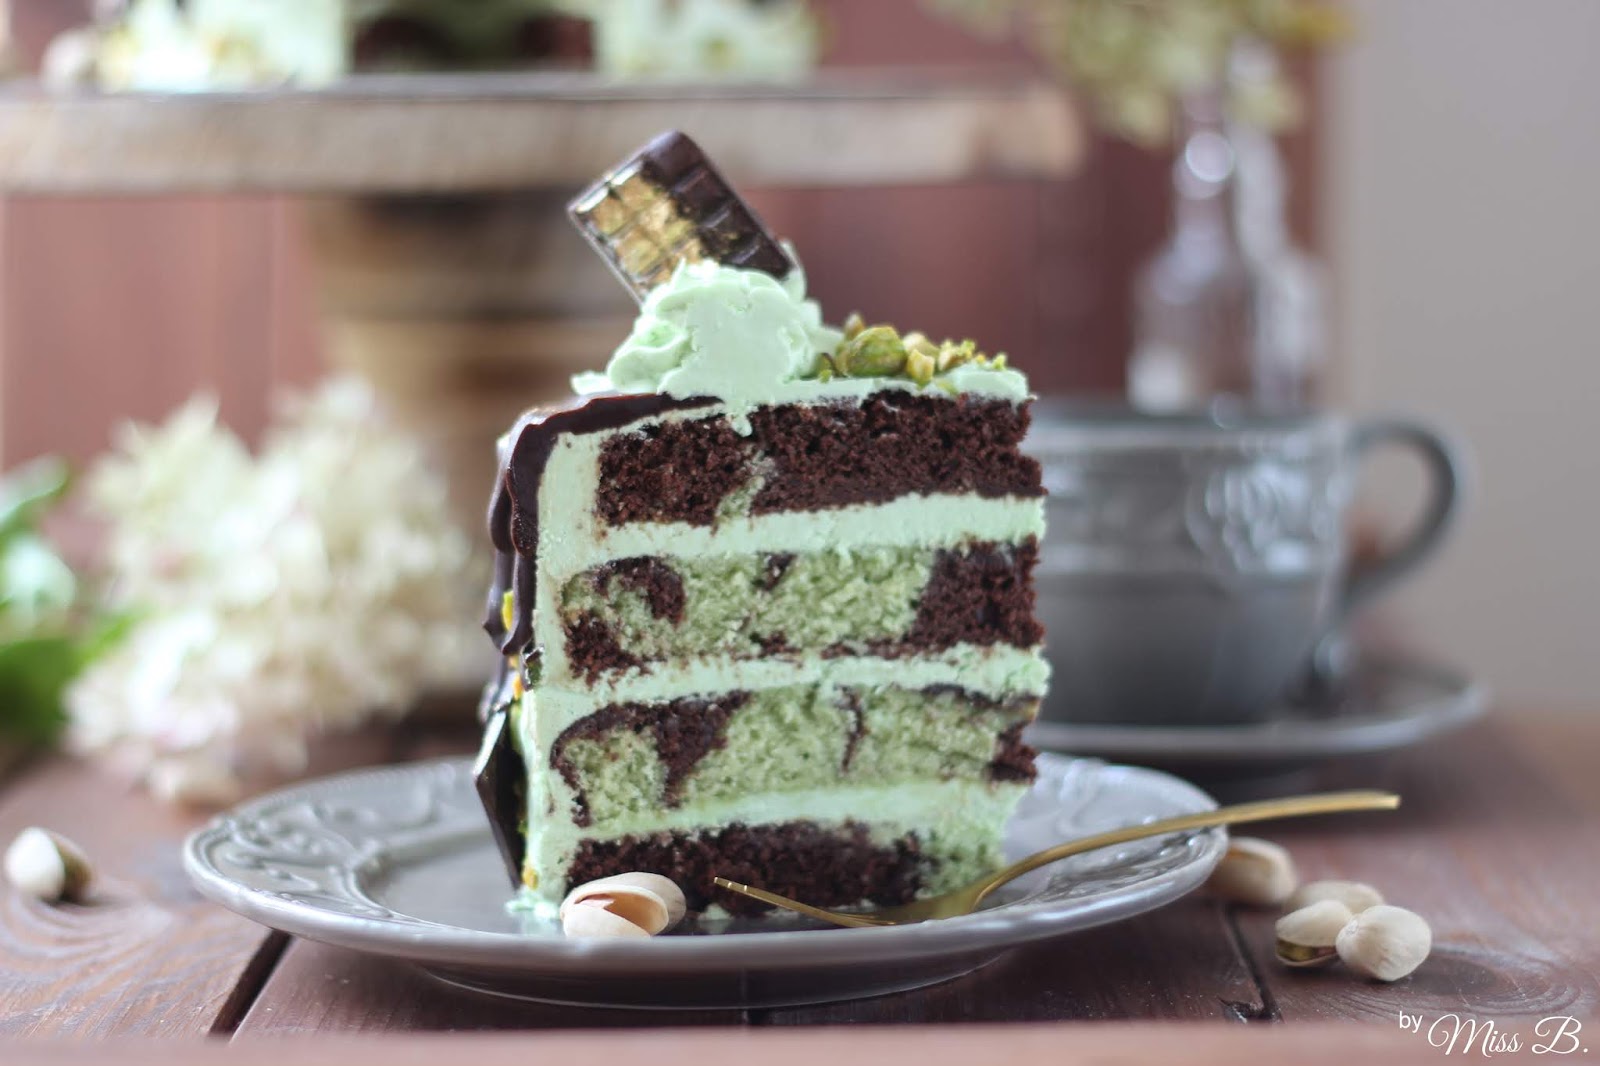 Schön dekadent: Schokoladen-Pistazien Drip Cake